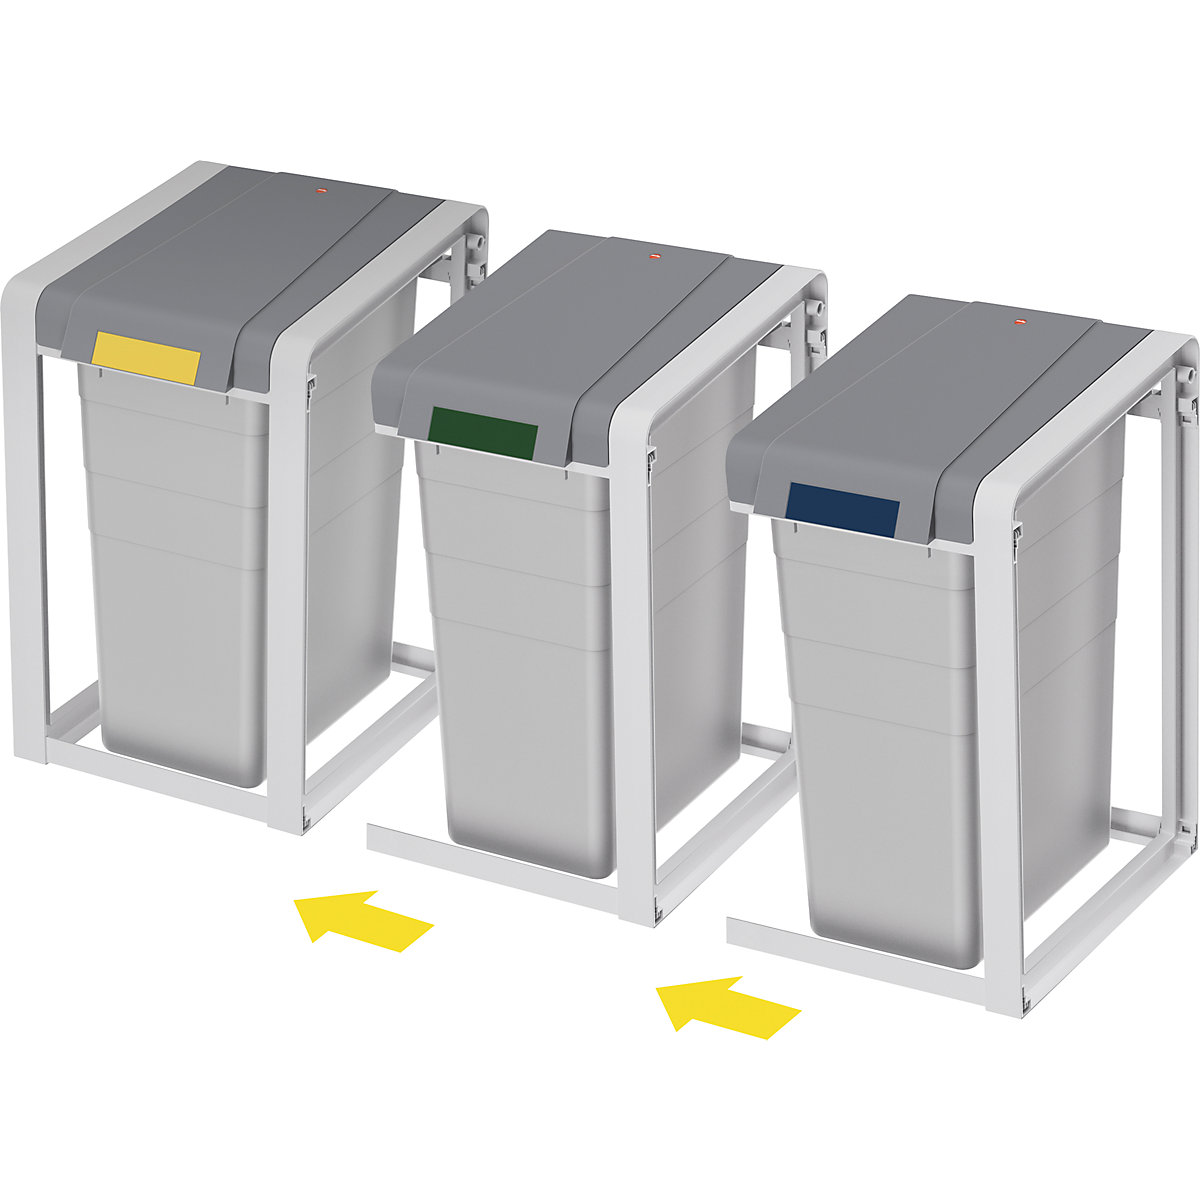 Sistema modular de recipientes para separar materiales ProfiLine, ecológico y flexible - Hailo